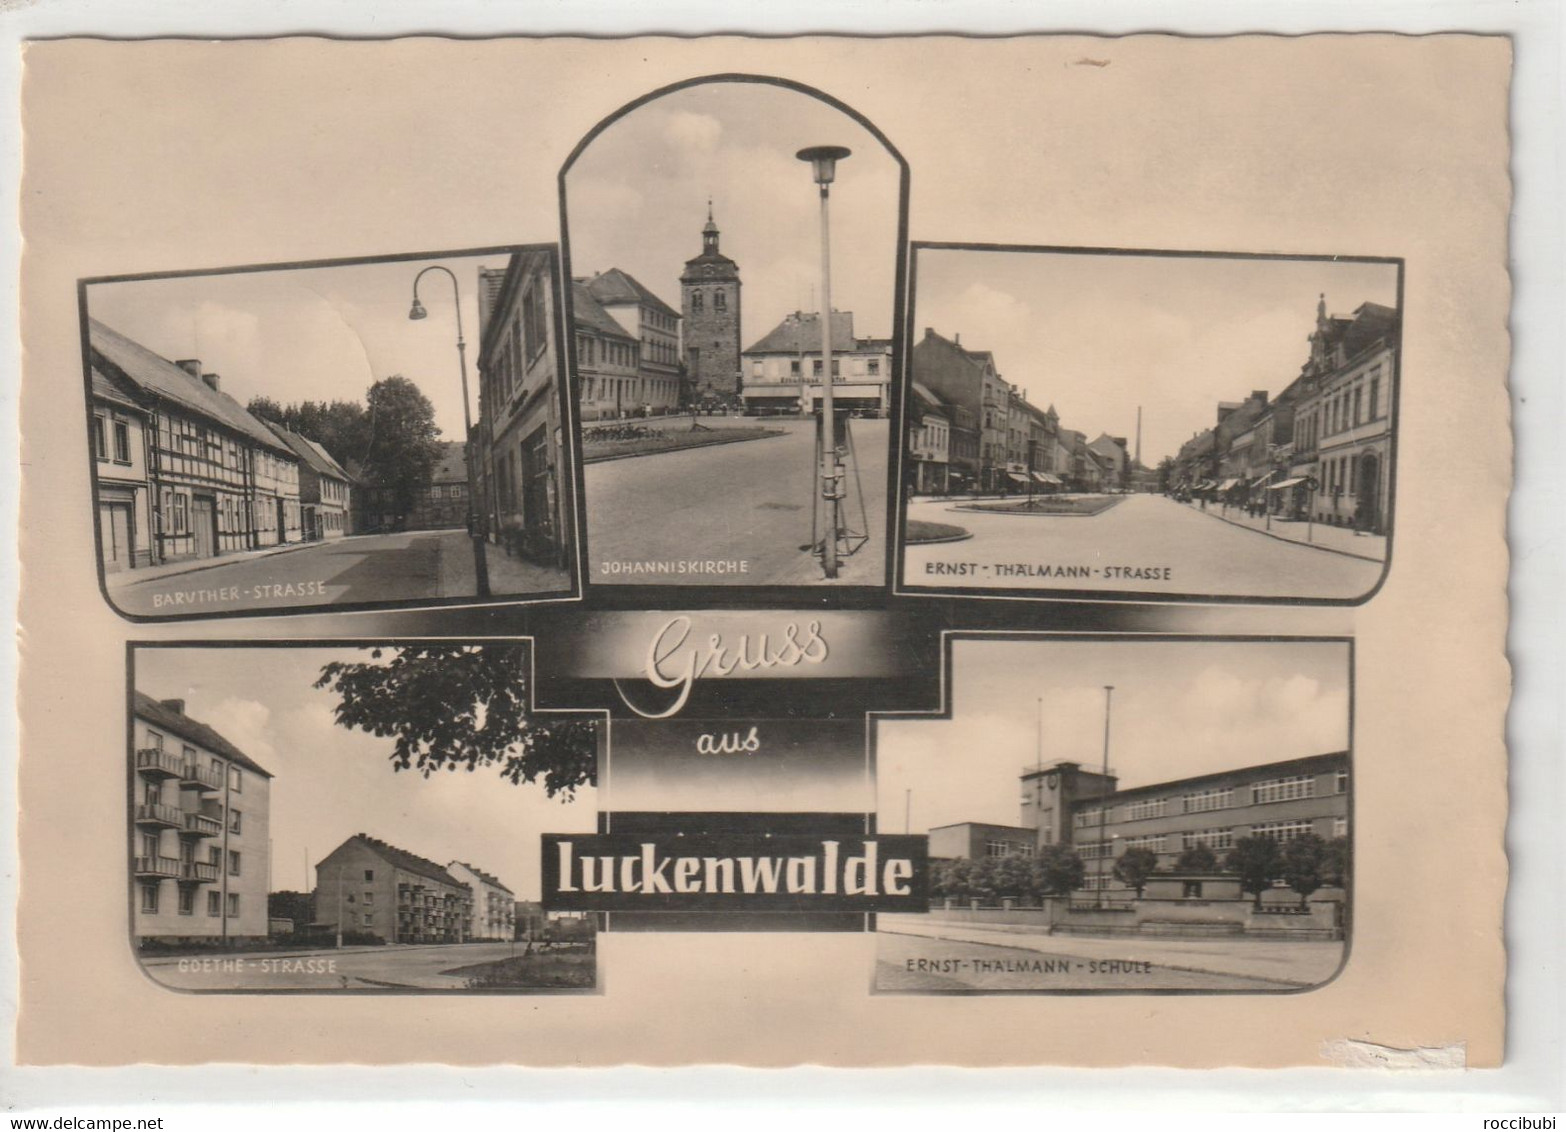 Luckenwalde, Brandenburg - Luckenwalde